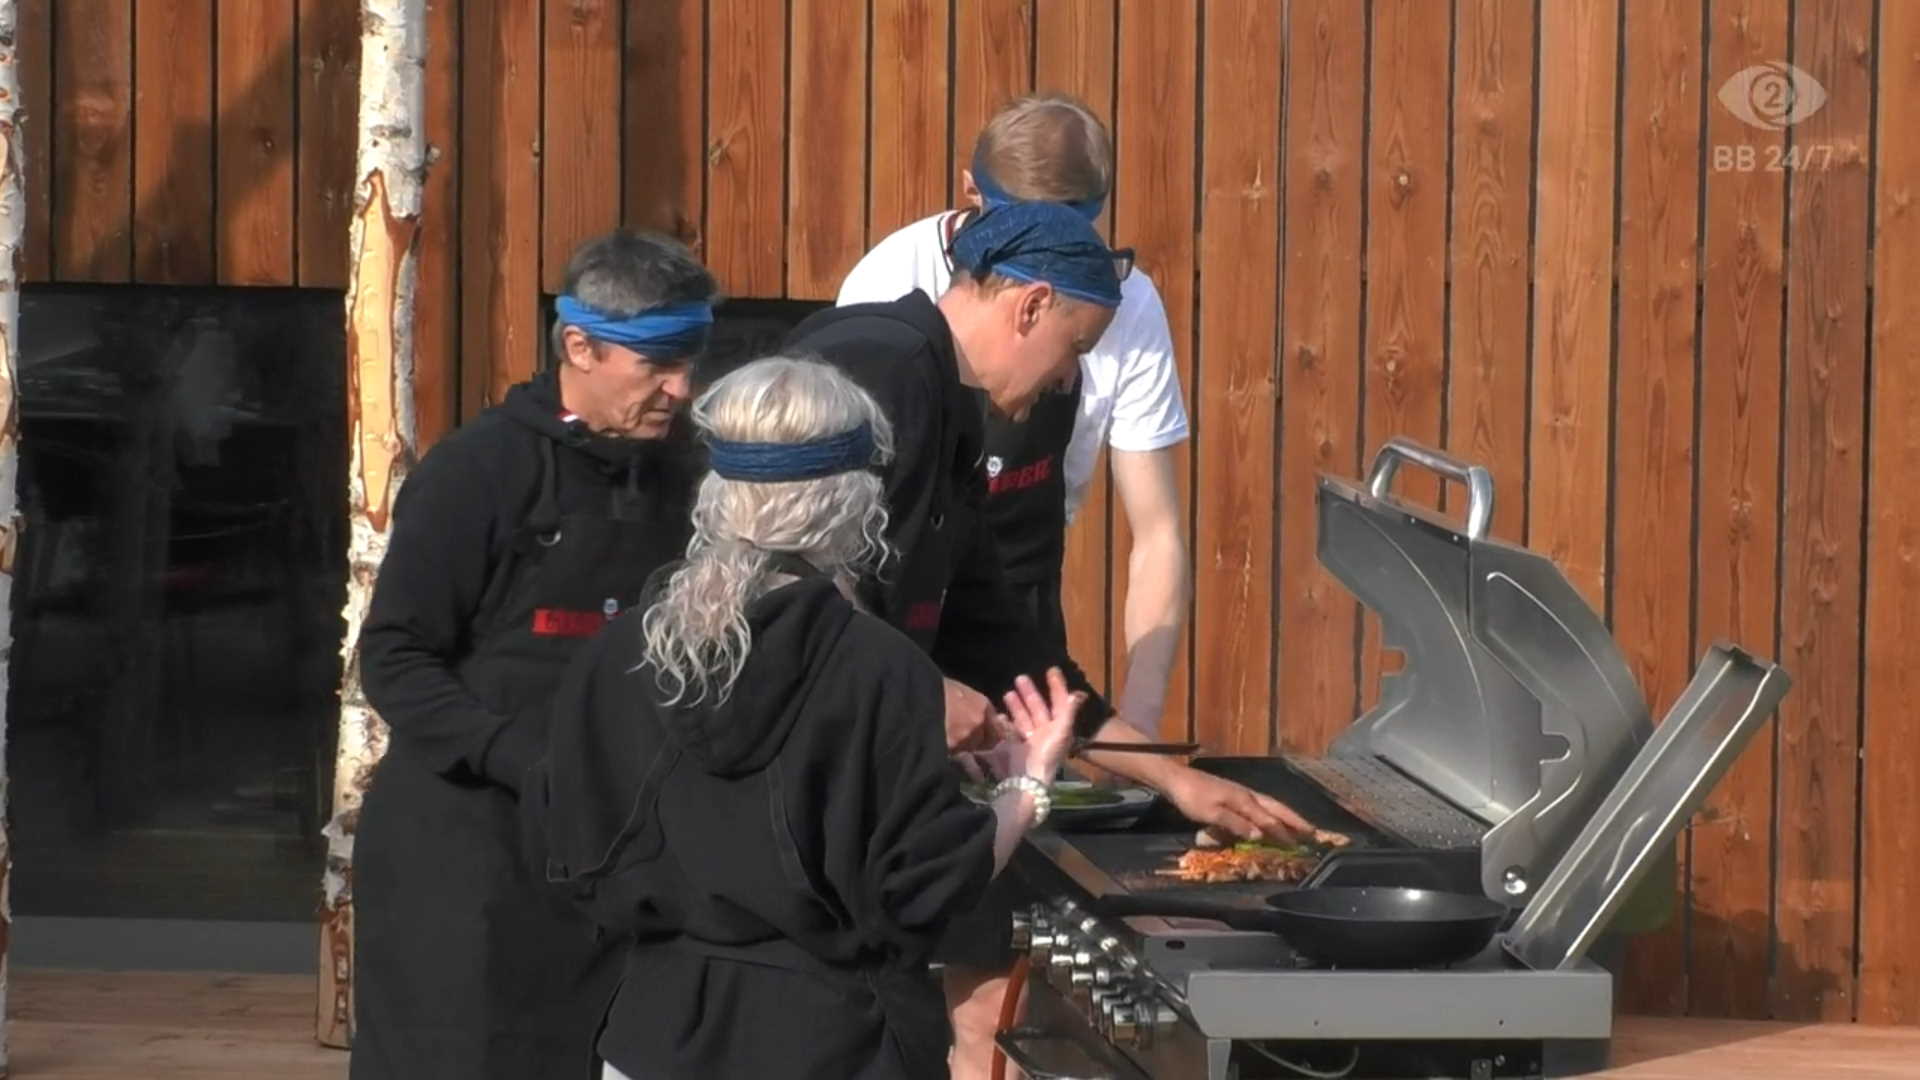 Sinisten joukkue seuraa kapteeni Jannen grillityöskentelyä. Kuva: © Nelonen Media.